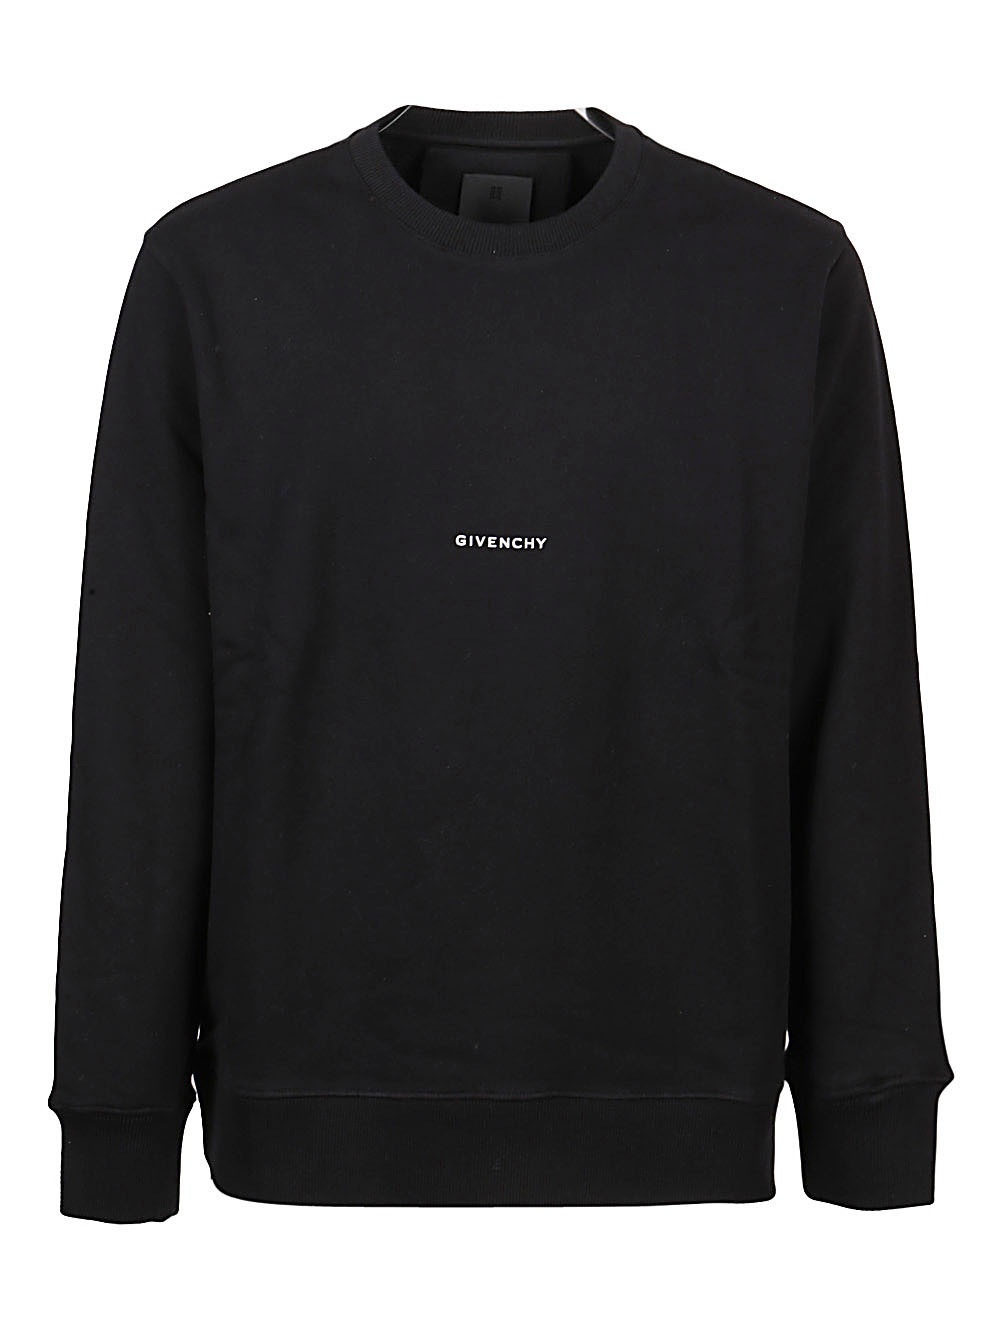 GIVENCHY - Logo Print Sweatshirt Givenchy